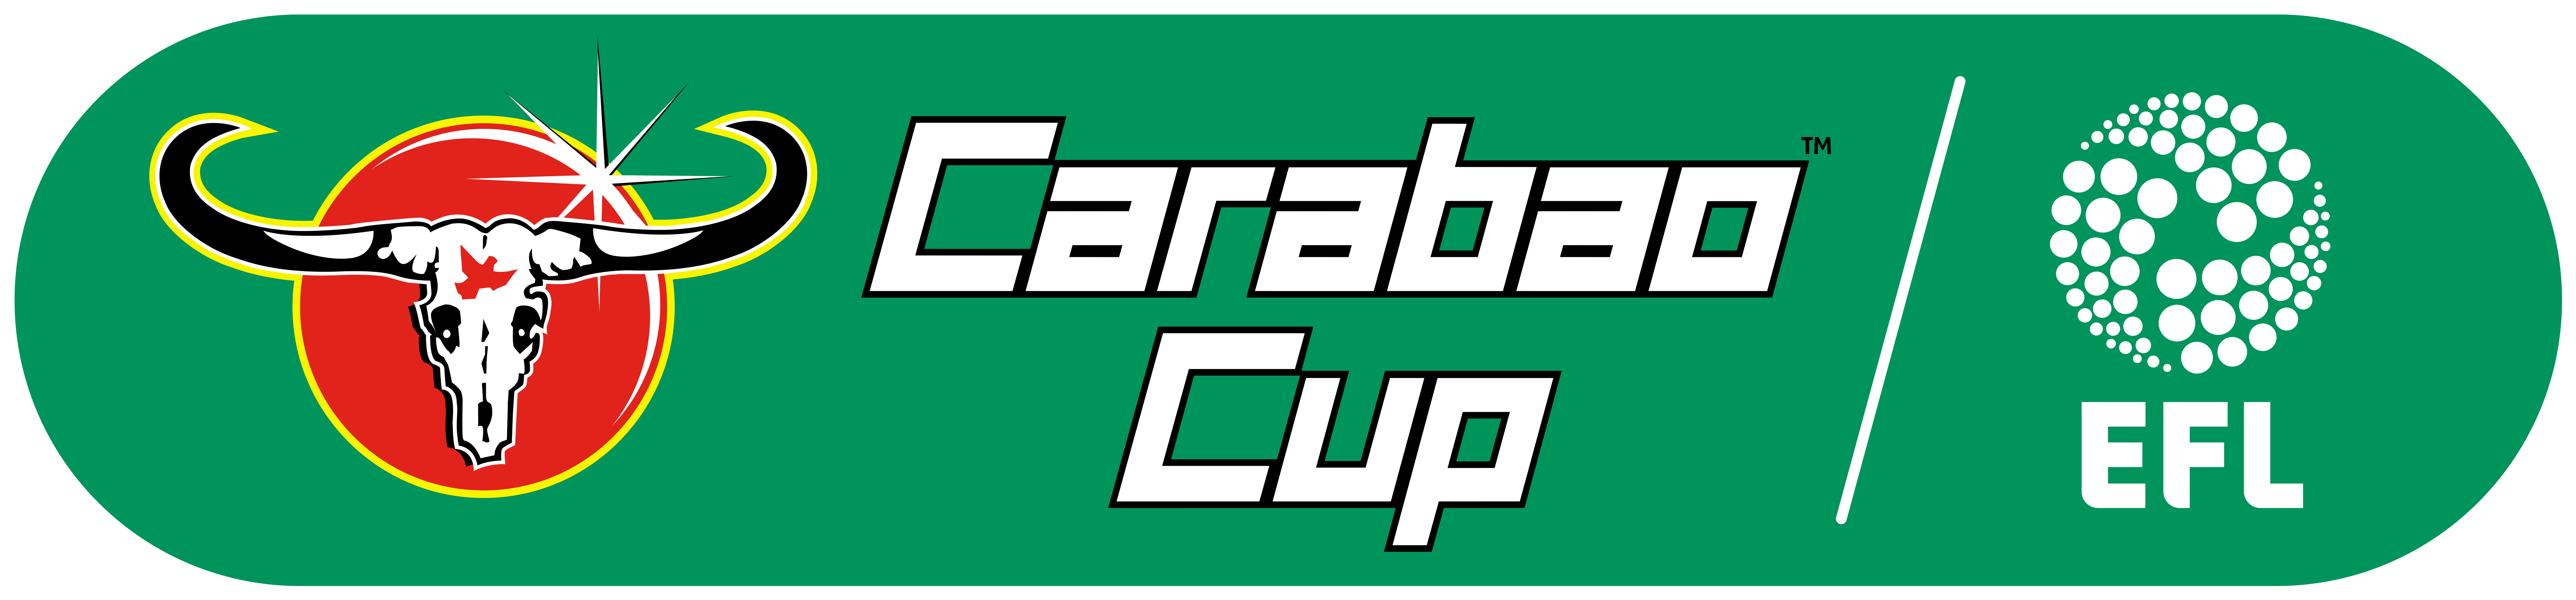 Carabao Cup Logo - Carabao Cup Logo Png - Free Transparent PNG Download